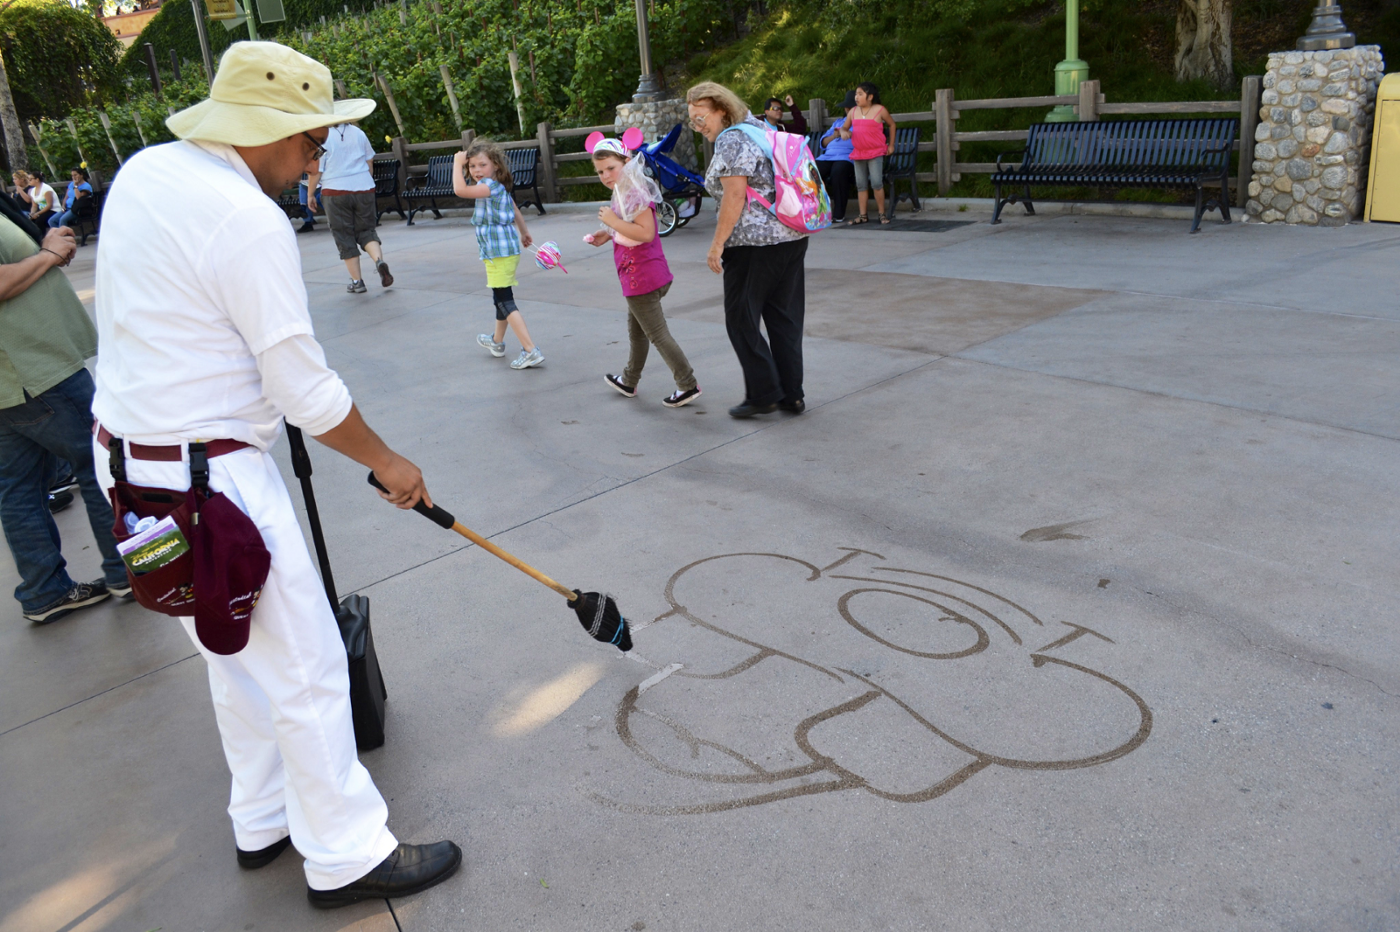 迪士尼樂園的環境清潔表演者正在地上畫圖娛樂貴賓。